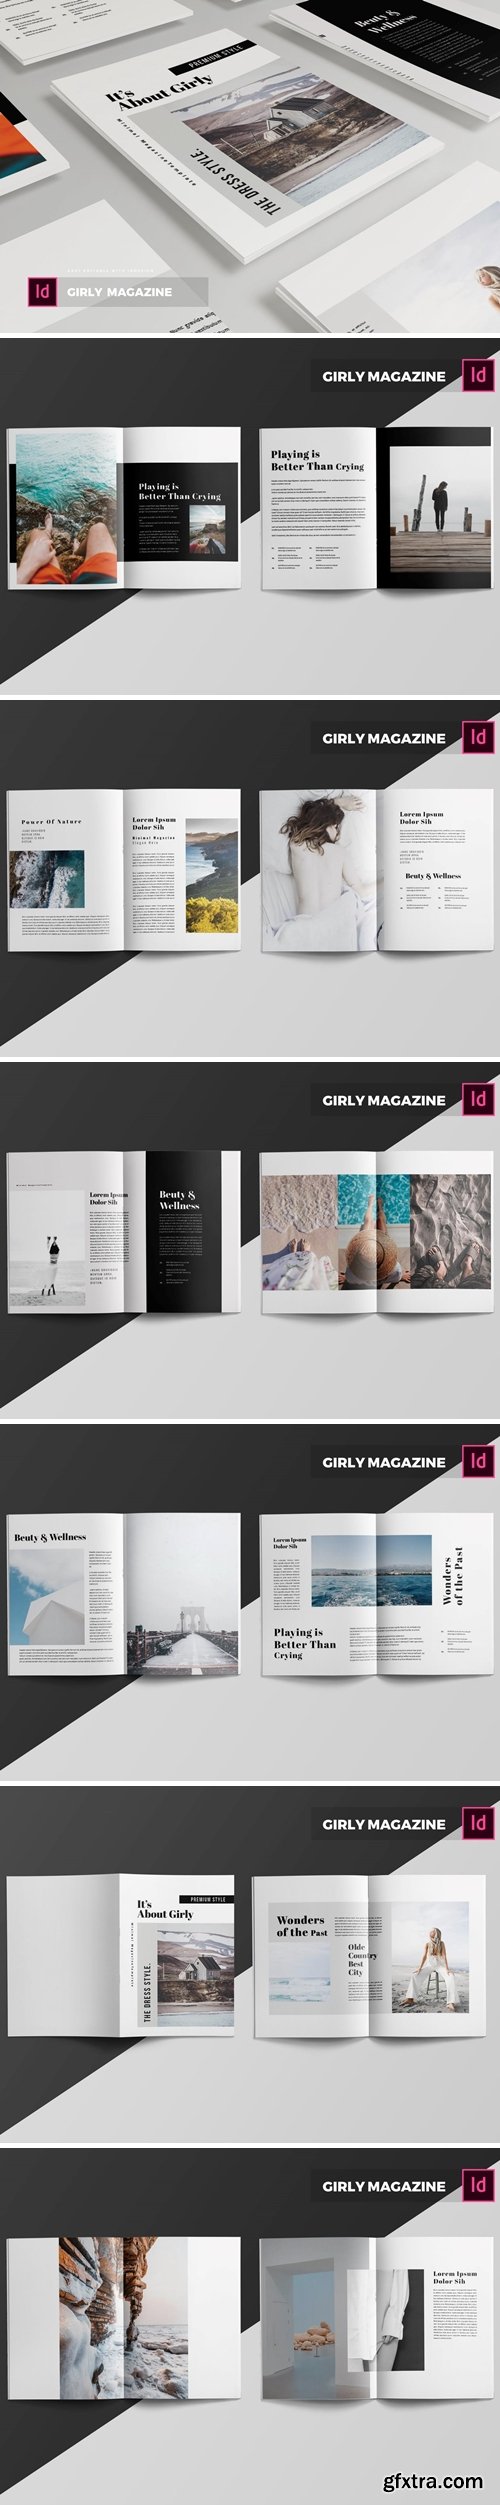 Girly | Magazine Template